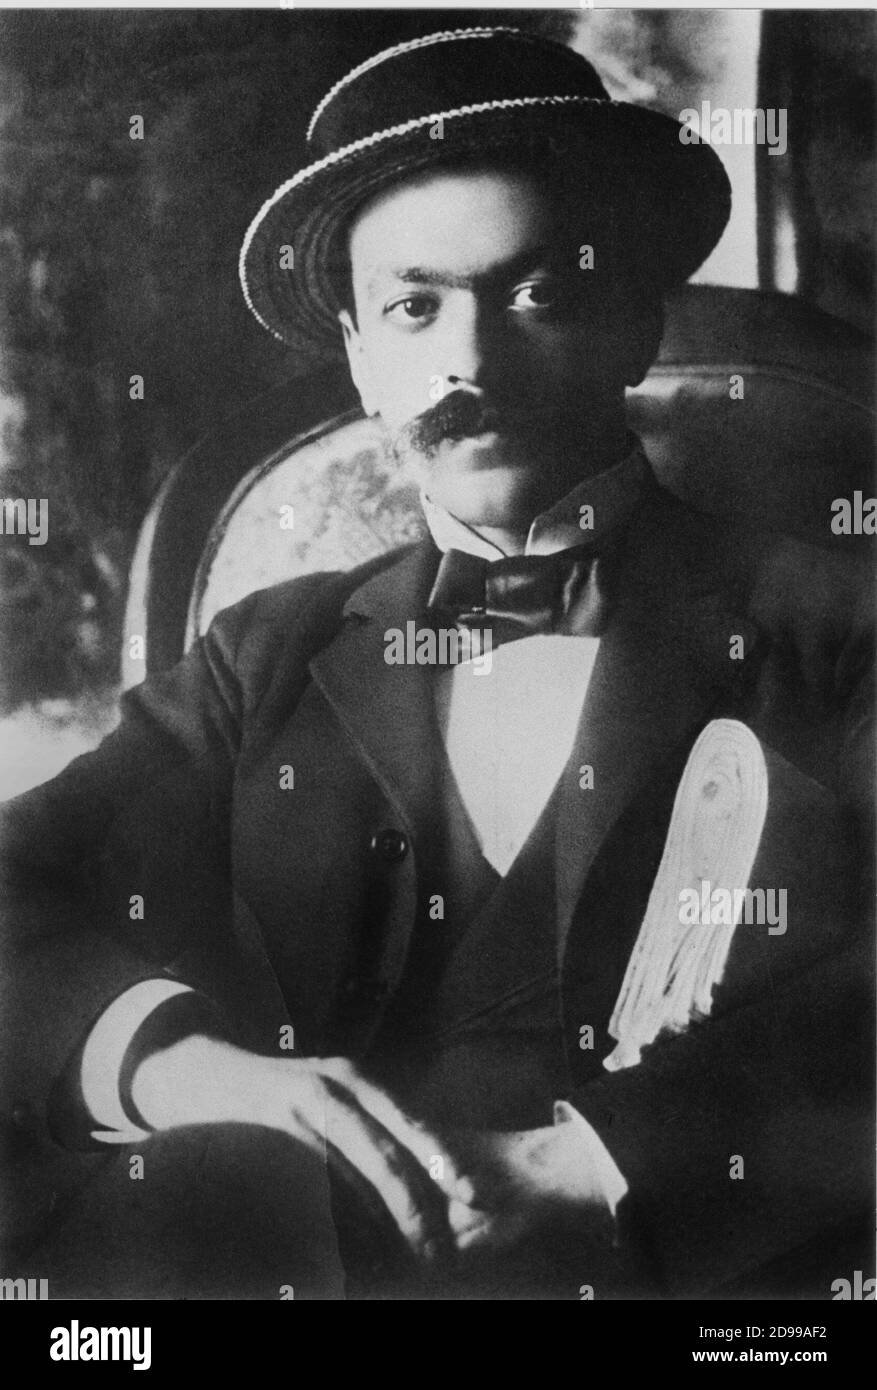 1912 , ITALIE: Italo SVEVO ( 1861 - 1928 ) , pseudonyme d'Ettore Schmitz ,  célèbre écrivain italien - LETTERATURA - LITTÉRATURE - baffi - moustache -  Paglietta - chapeau - cappello - papillon - cravate - cravatta- BELLE EPOQUE  ---- Archivio GBB Photo ...